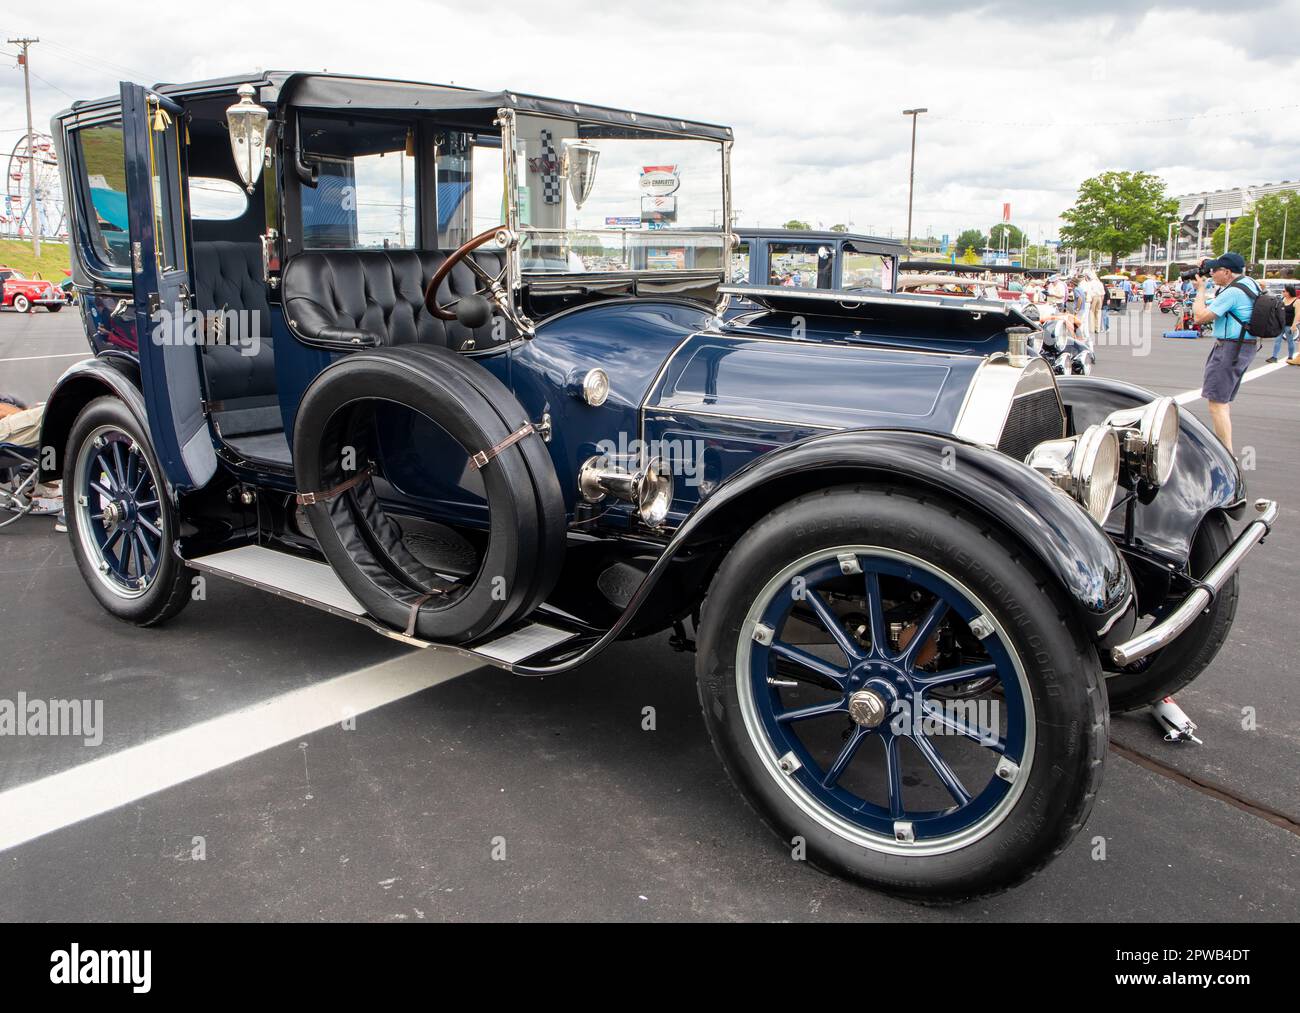 Une voiture Pierce Arrow 1915 restaurée exposée lors d'un salon de voiture classique. Banque D'Images